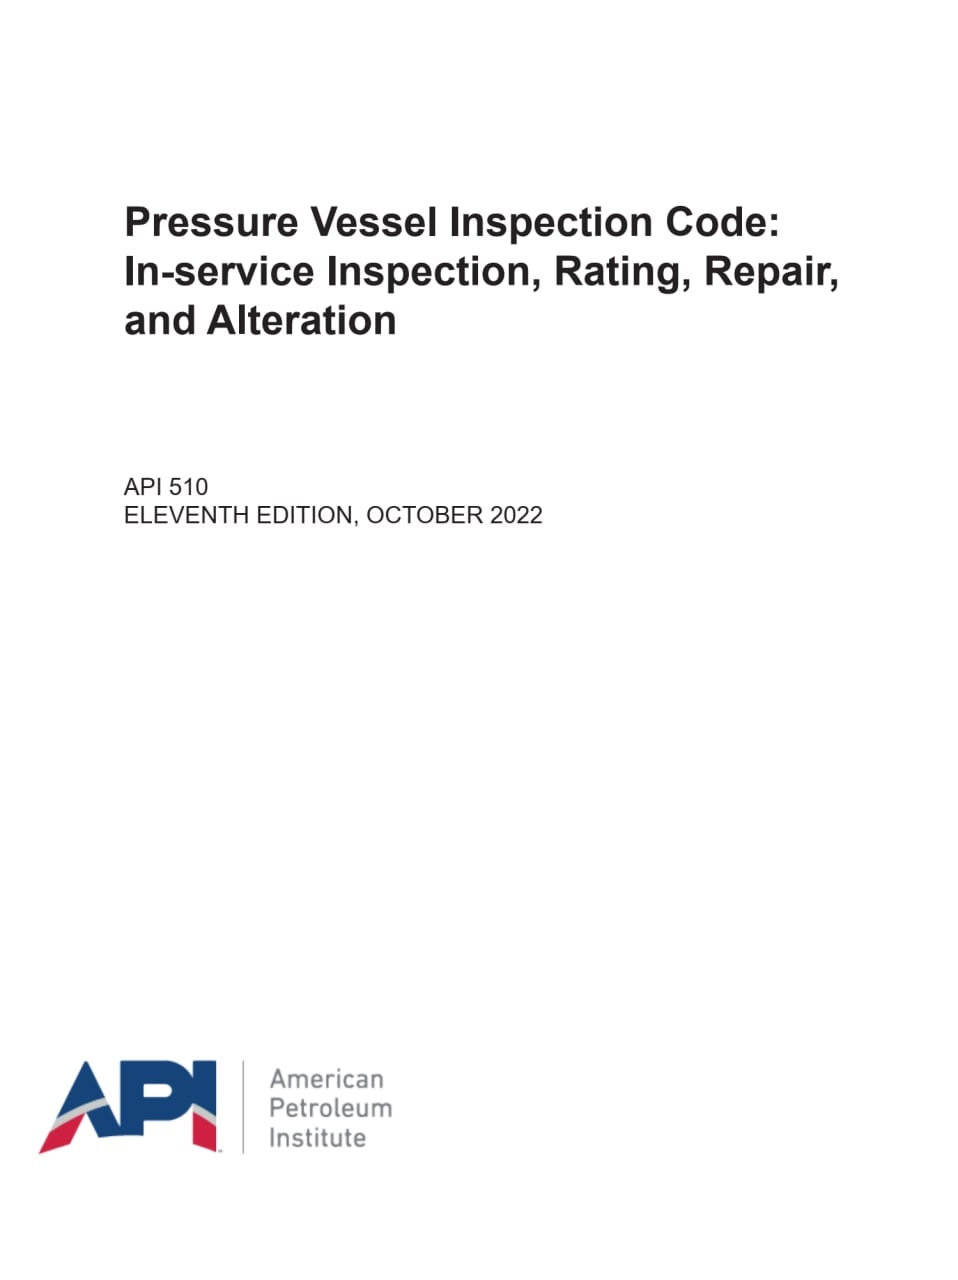 ⭕استاندارد سیستم بازرسی حین بهره برداری ظروف تحت فشار  ویرایش 2022⭕ 🟠API 510   2022🟠  ✅Pressure Vessel Inspection Code: In-service Inspection, Rating, Repair, and Alteration